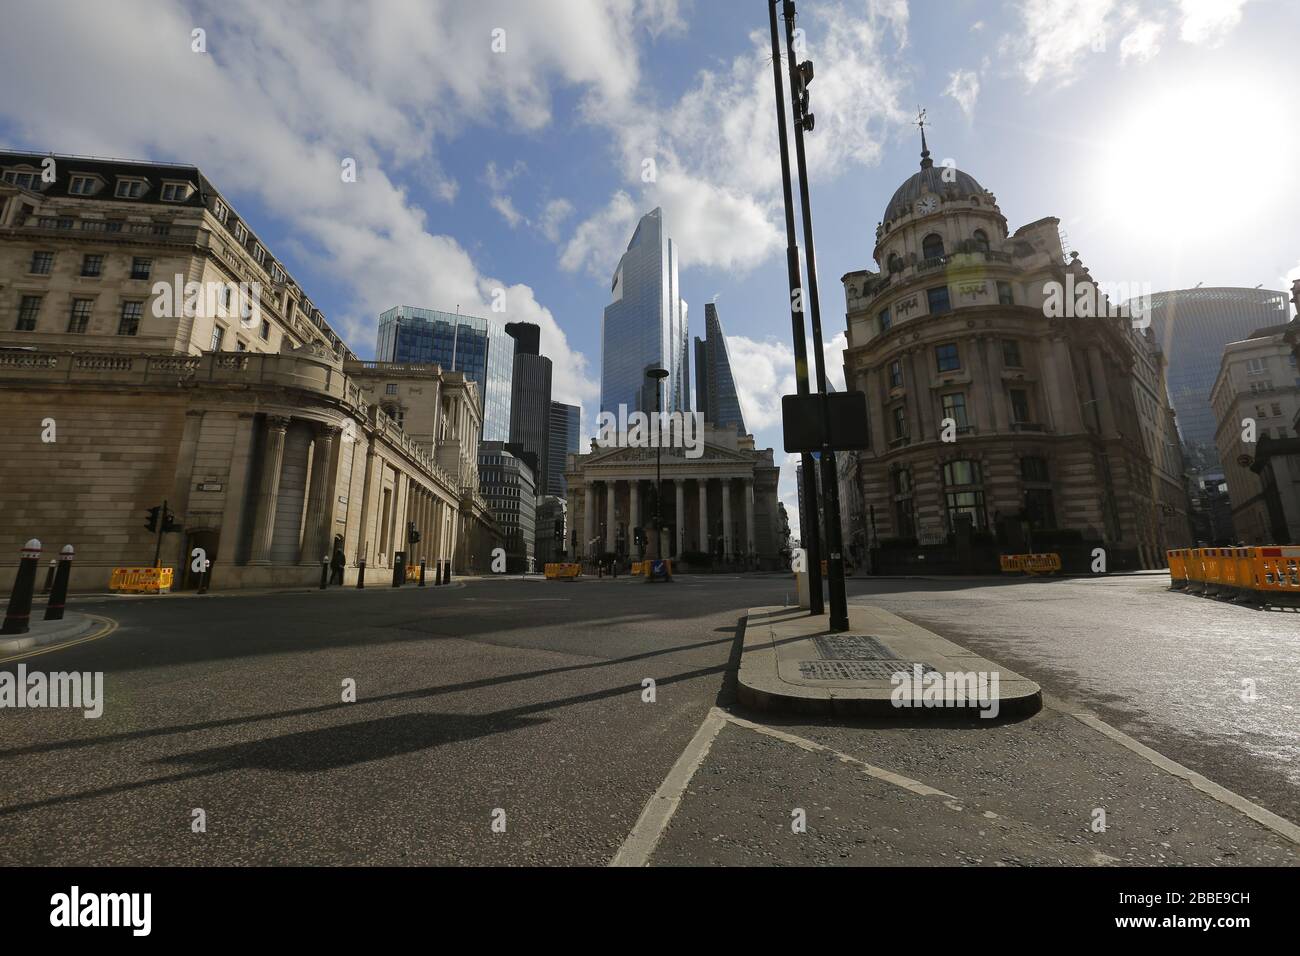 Londres, Royaume-Uni, 31 mars 2020, Sunny day at Bank of England et les rues vides voisines pendant l'épidémie de pandémie de COVID-19, crédit : 24/Alay Live News Banque D'Images